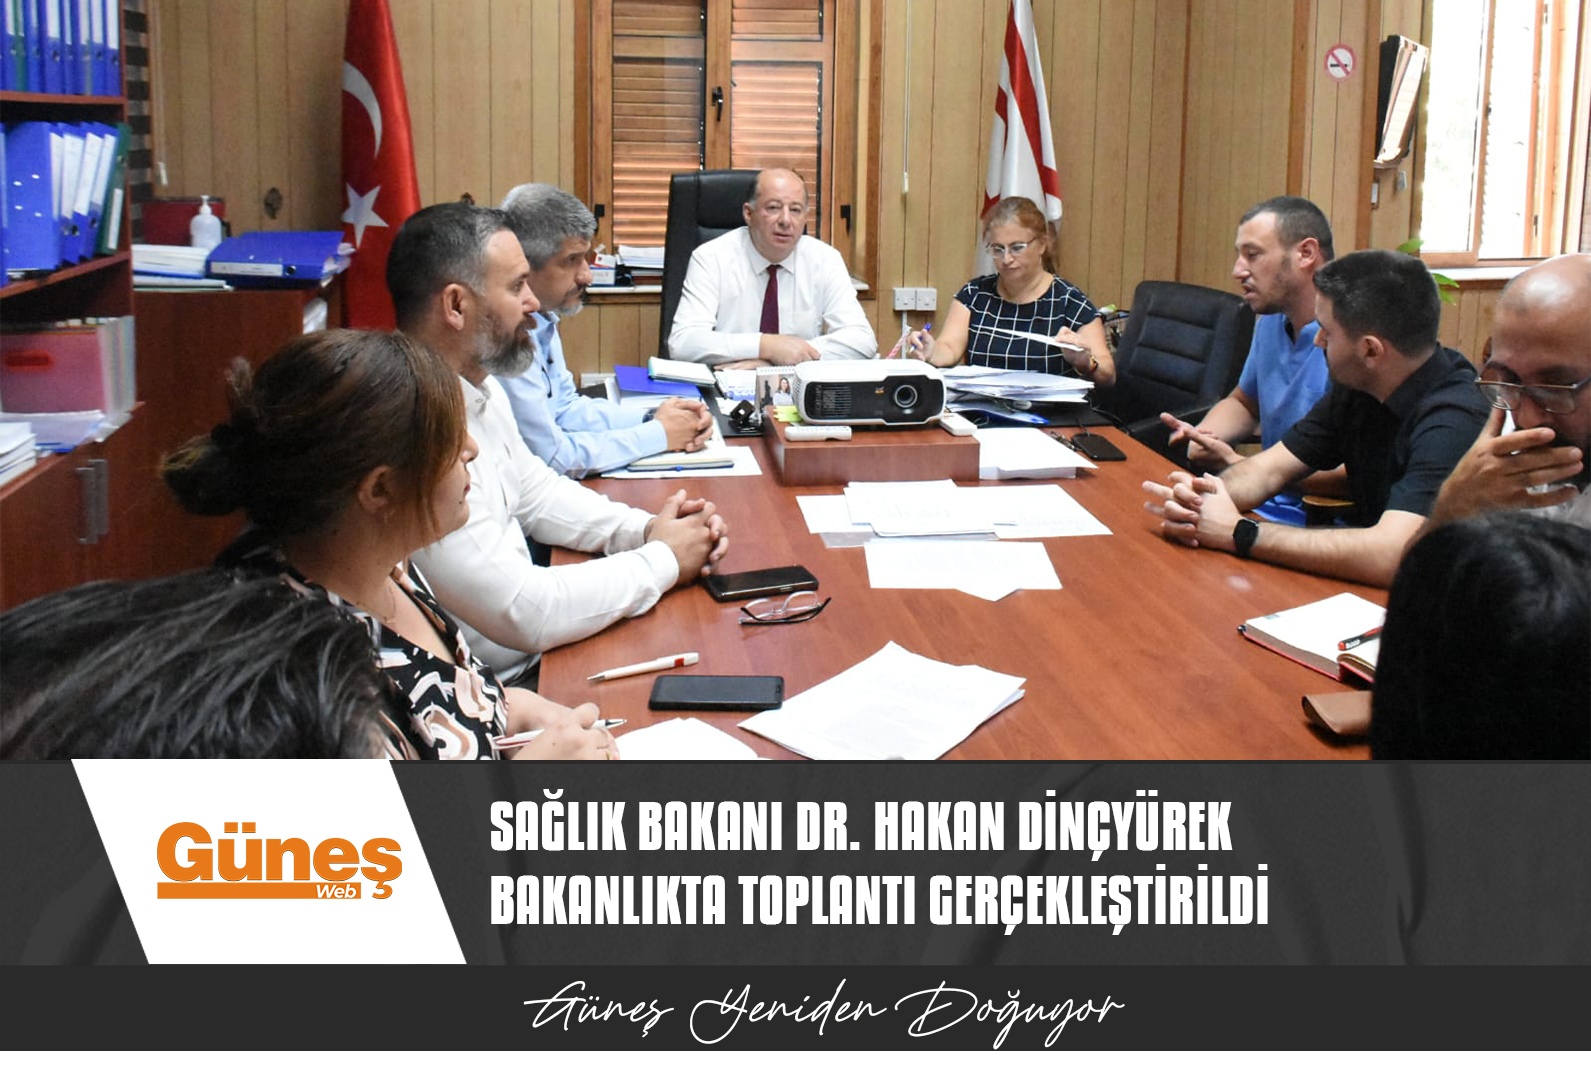 Sağlık Bakanı Dr. Hakan Dinçyürek bakanlıkta toplantı gerçekleştirildi